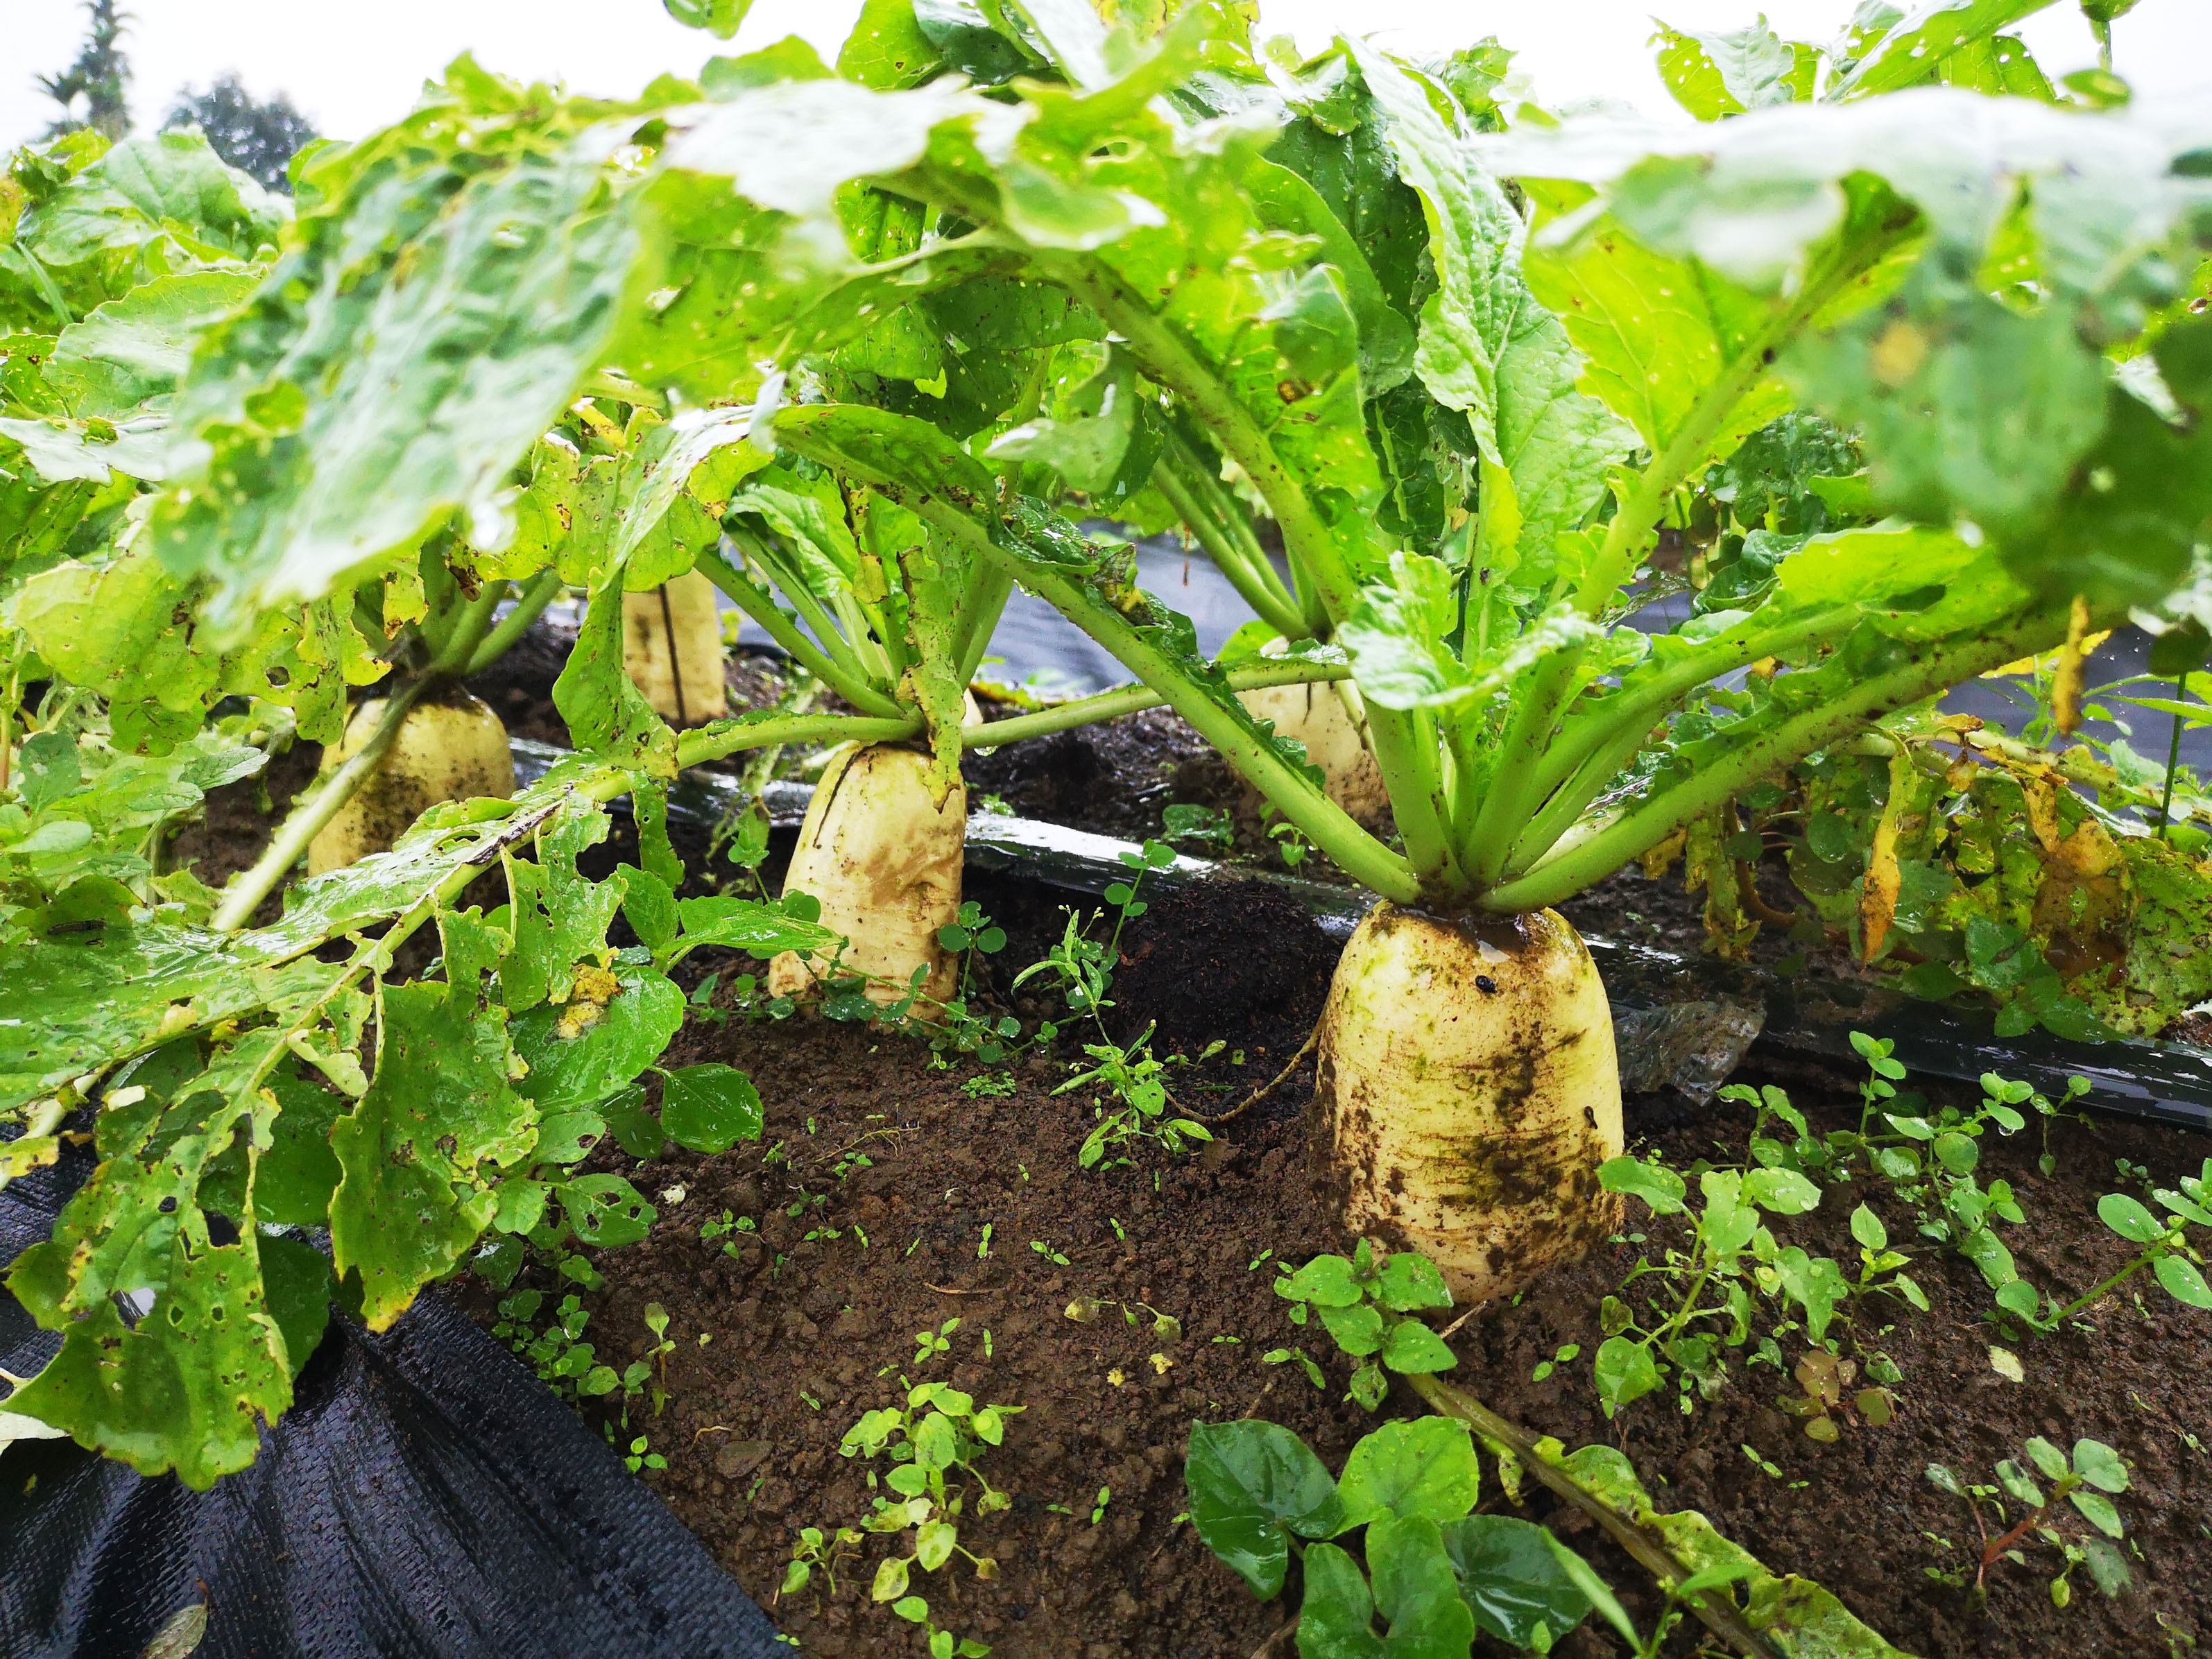 沼渣有機質肥料已對20種以上作物的基肥或追肥田間驗證，與市售商品肥料相比，不僅產量增加，作物生長發育也不錯。圖為添加沼渣有機質肥料所種植的白蘿蔔，產量多又肥大。